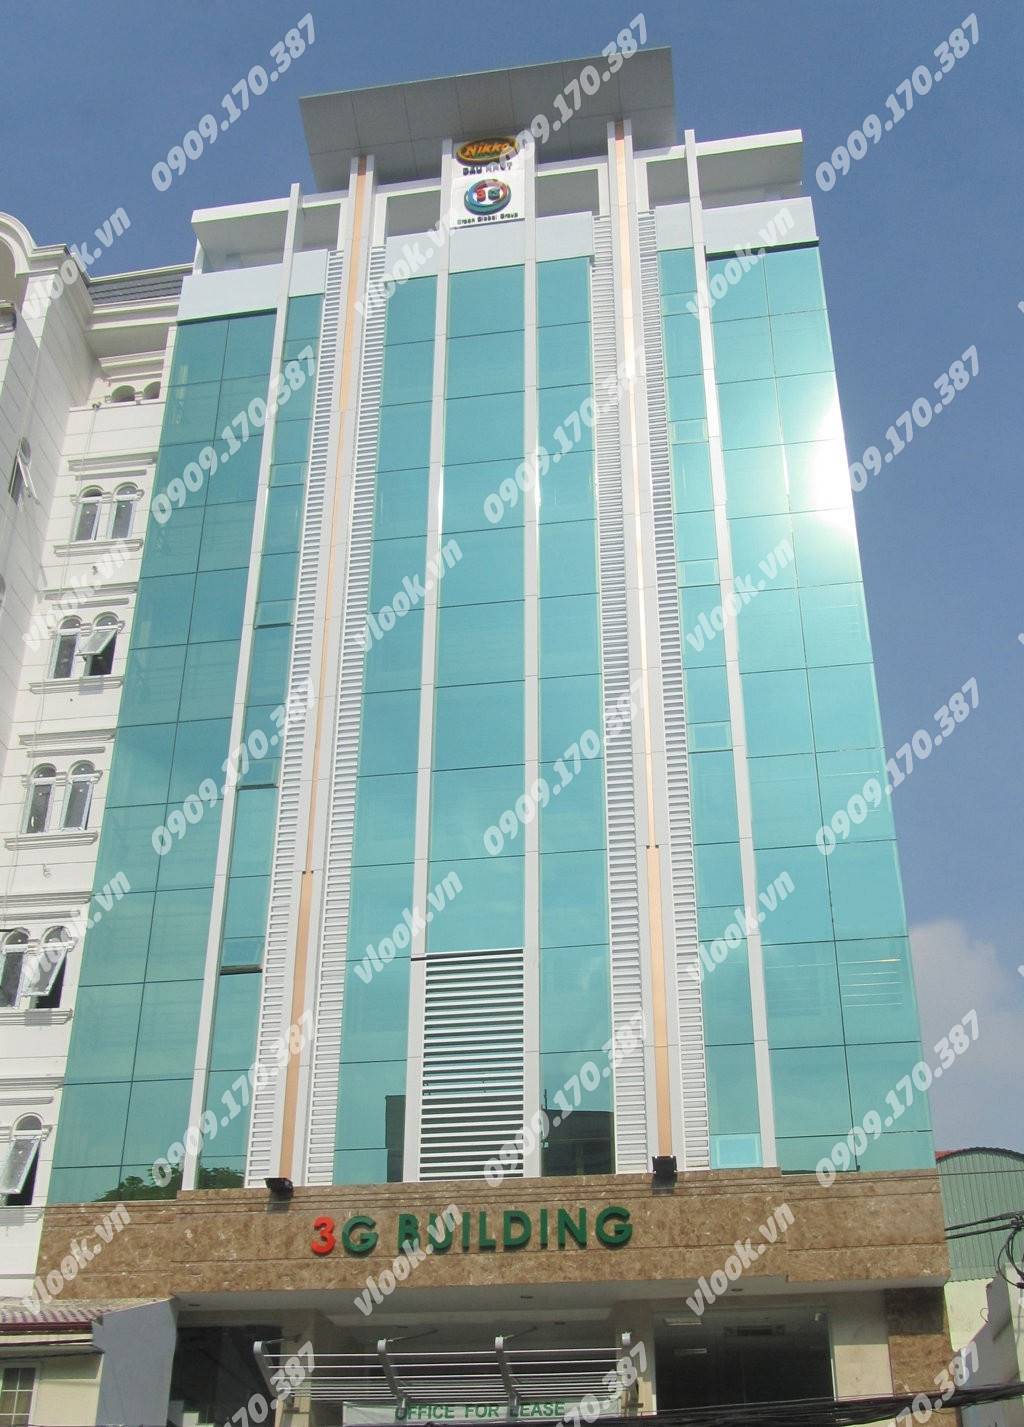 Cao ốc văn phòng cho thuê 3G Building, Võ Văn Tần, Quận 3, TP.HCM - vlook.vn